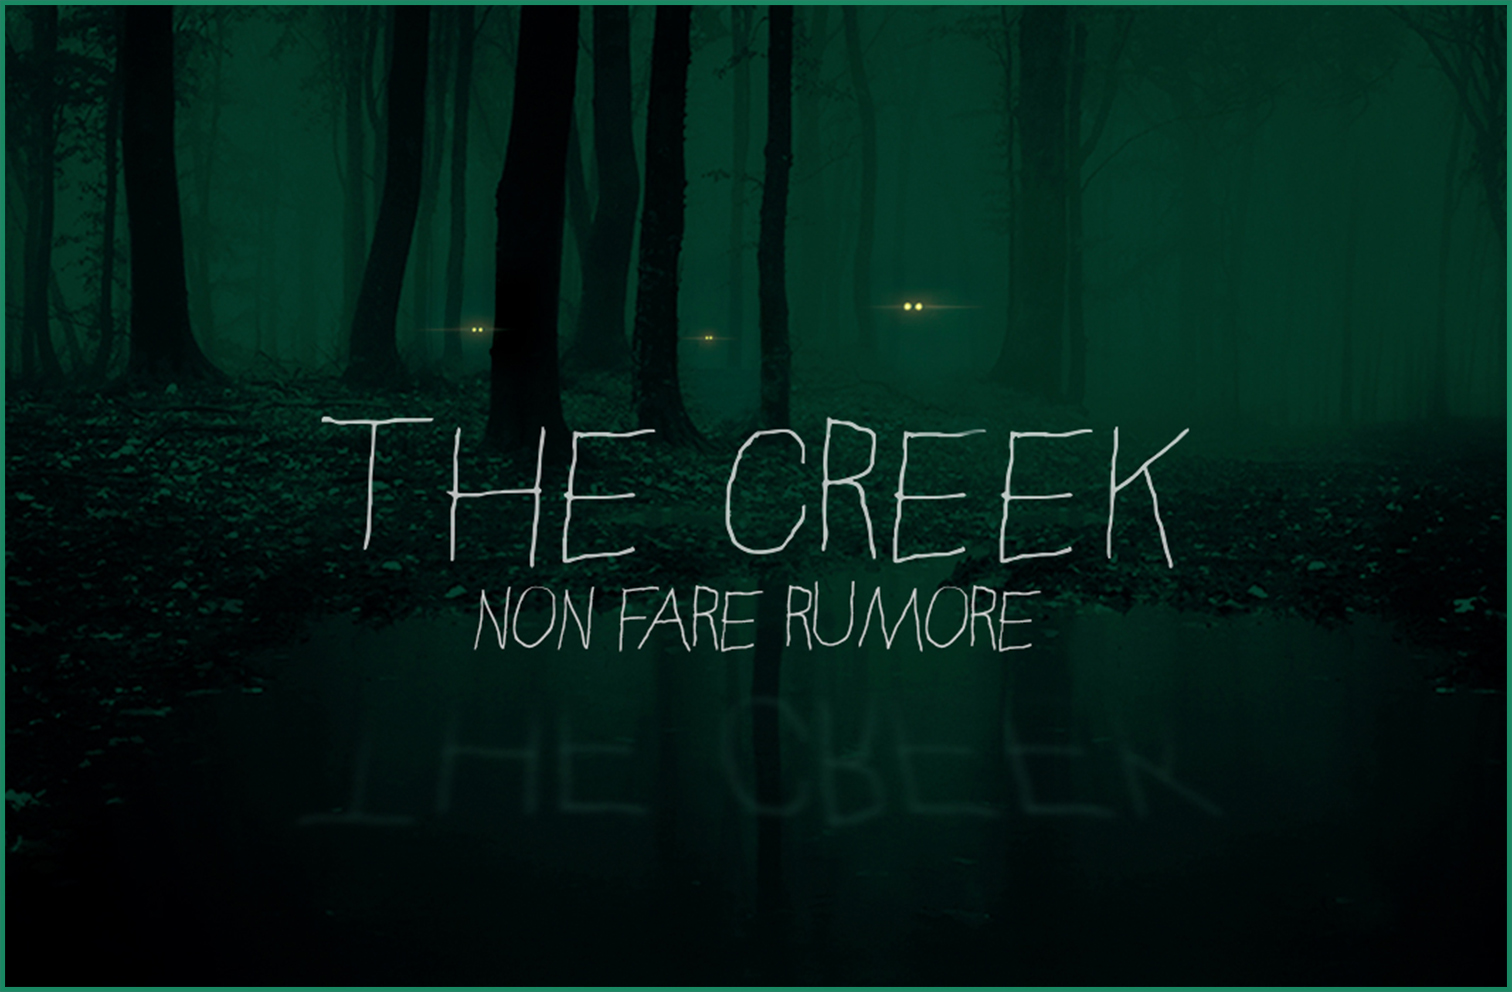 The Creek</br>Non fare rumore